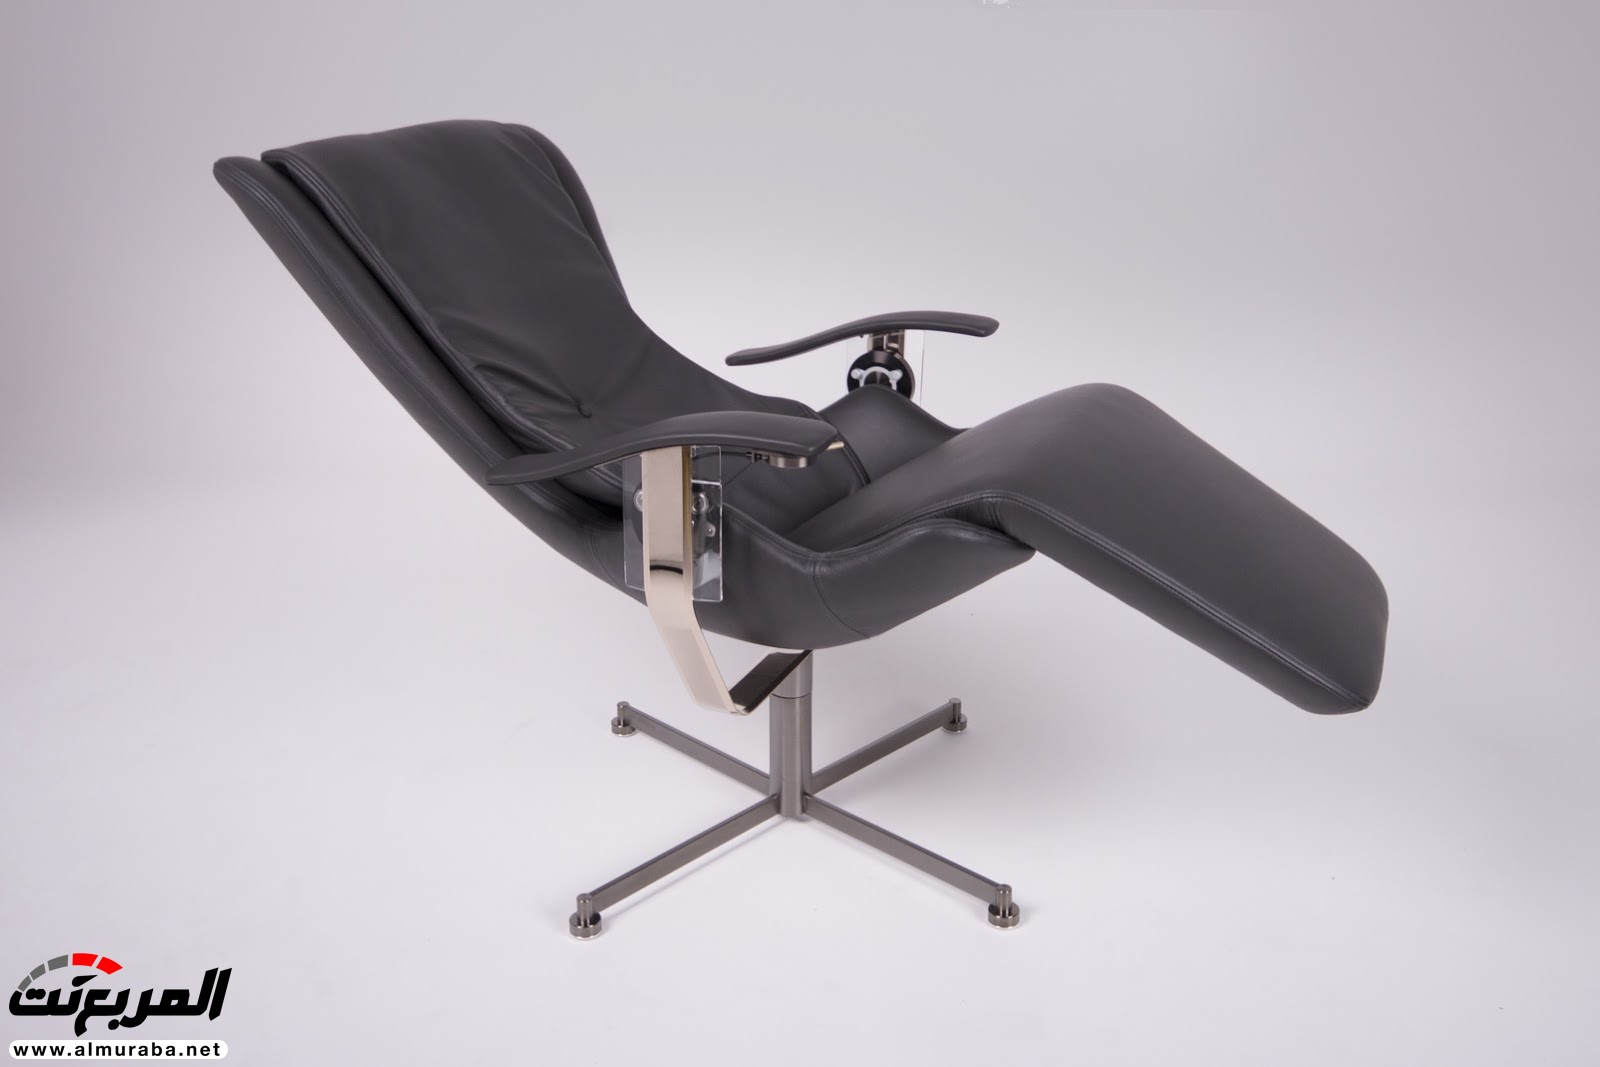 تعرف على مواصفات وسعر أغلى كرسي في العالم من شركة رولزرويس 38